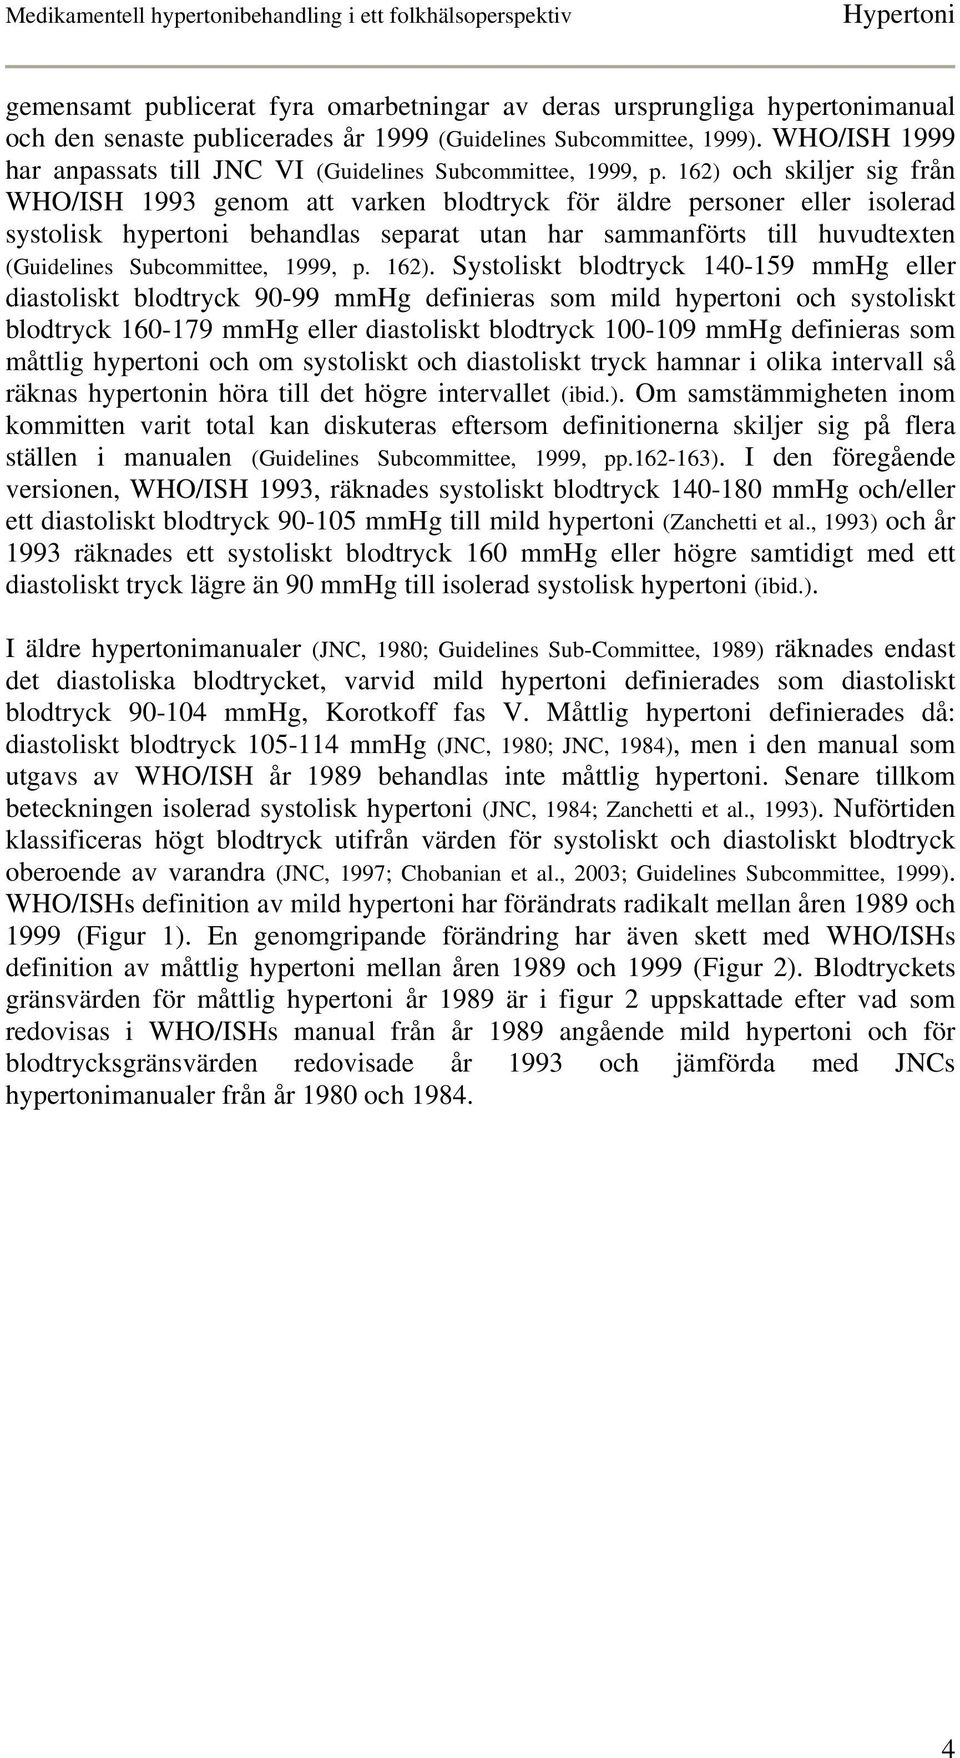 162) och skiljer sig från WHO/ISH 1993 genom att varken blodtryck för äldre personer eller isolerad systolisk hypertoni behandlas separat utan har sammanförts till huvudtexten (Guidelines